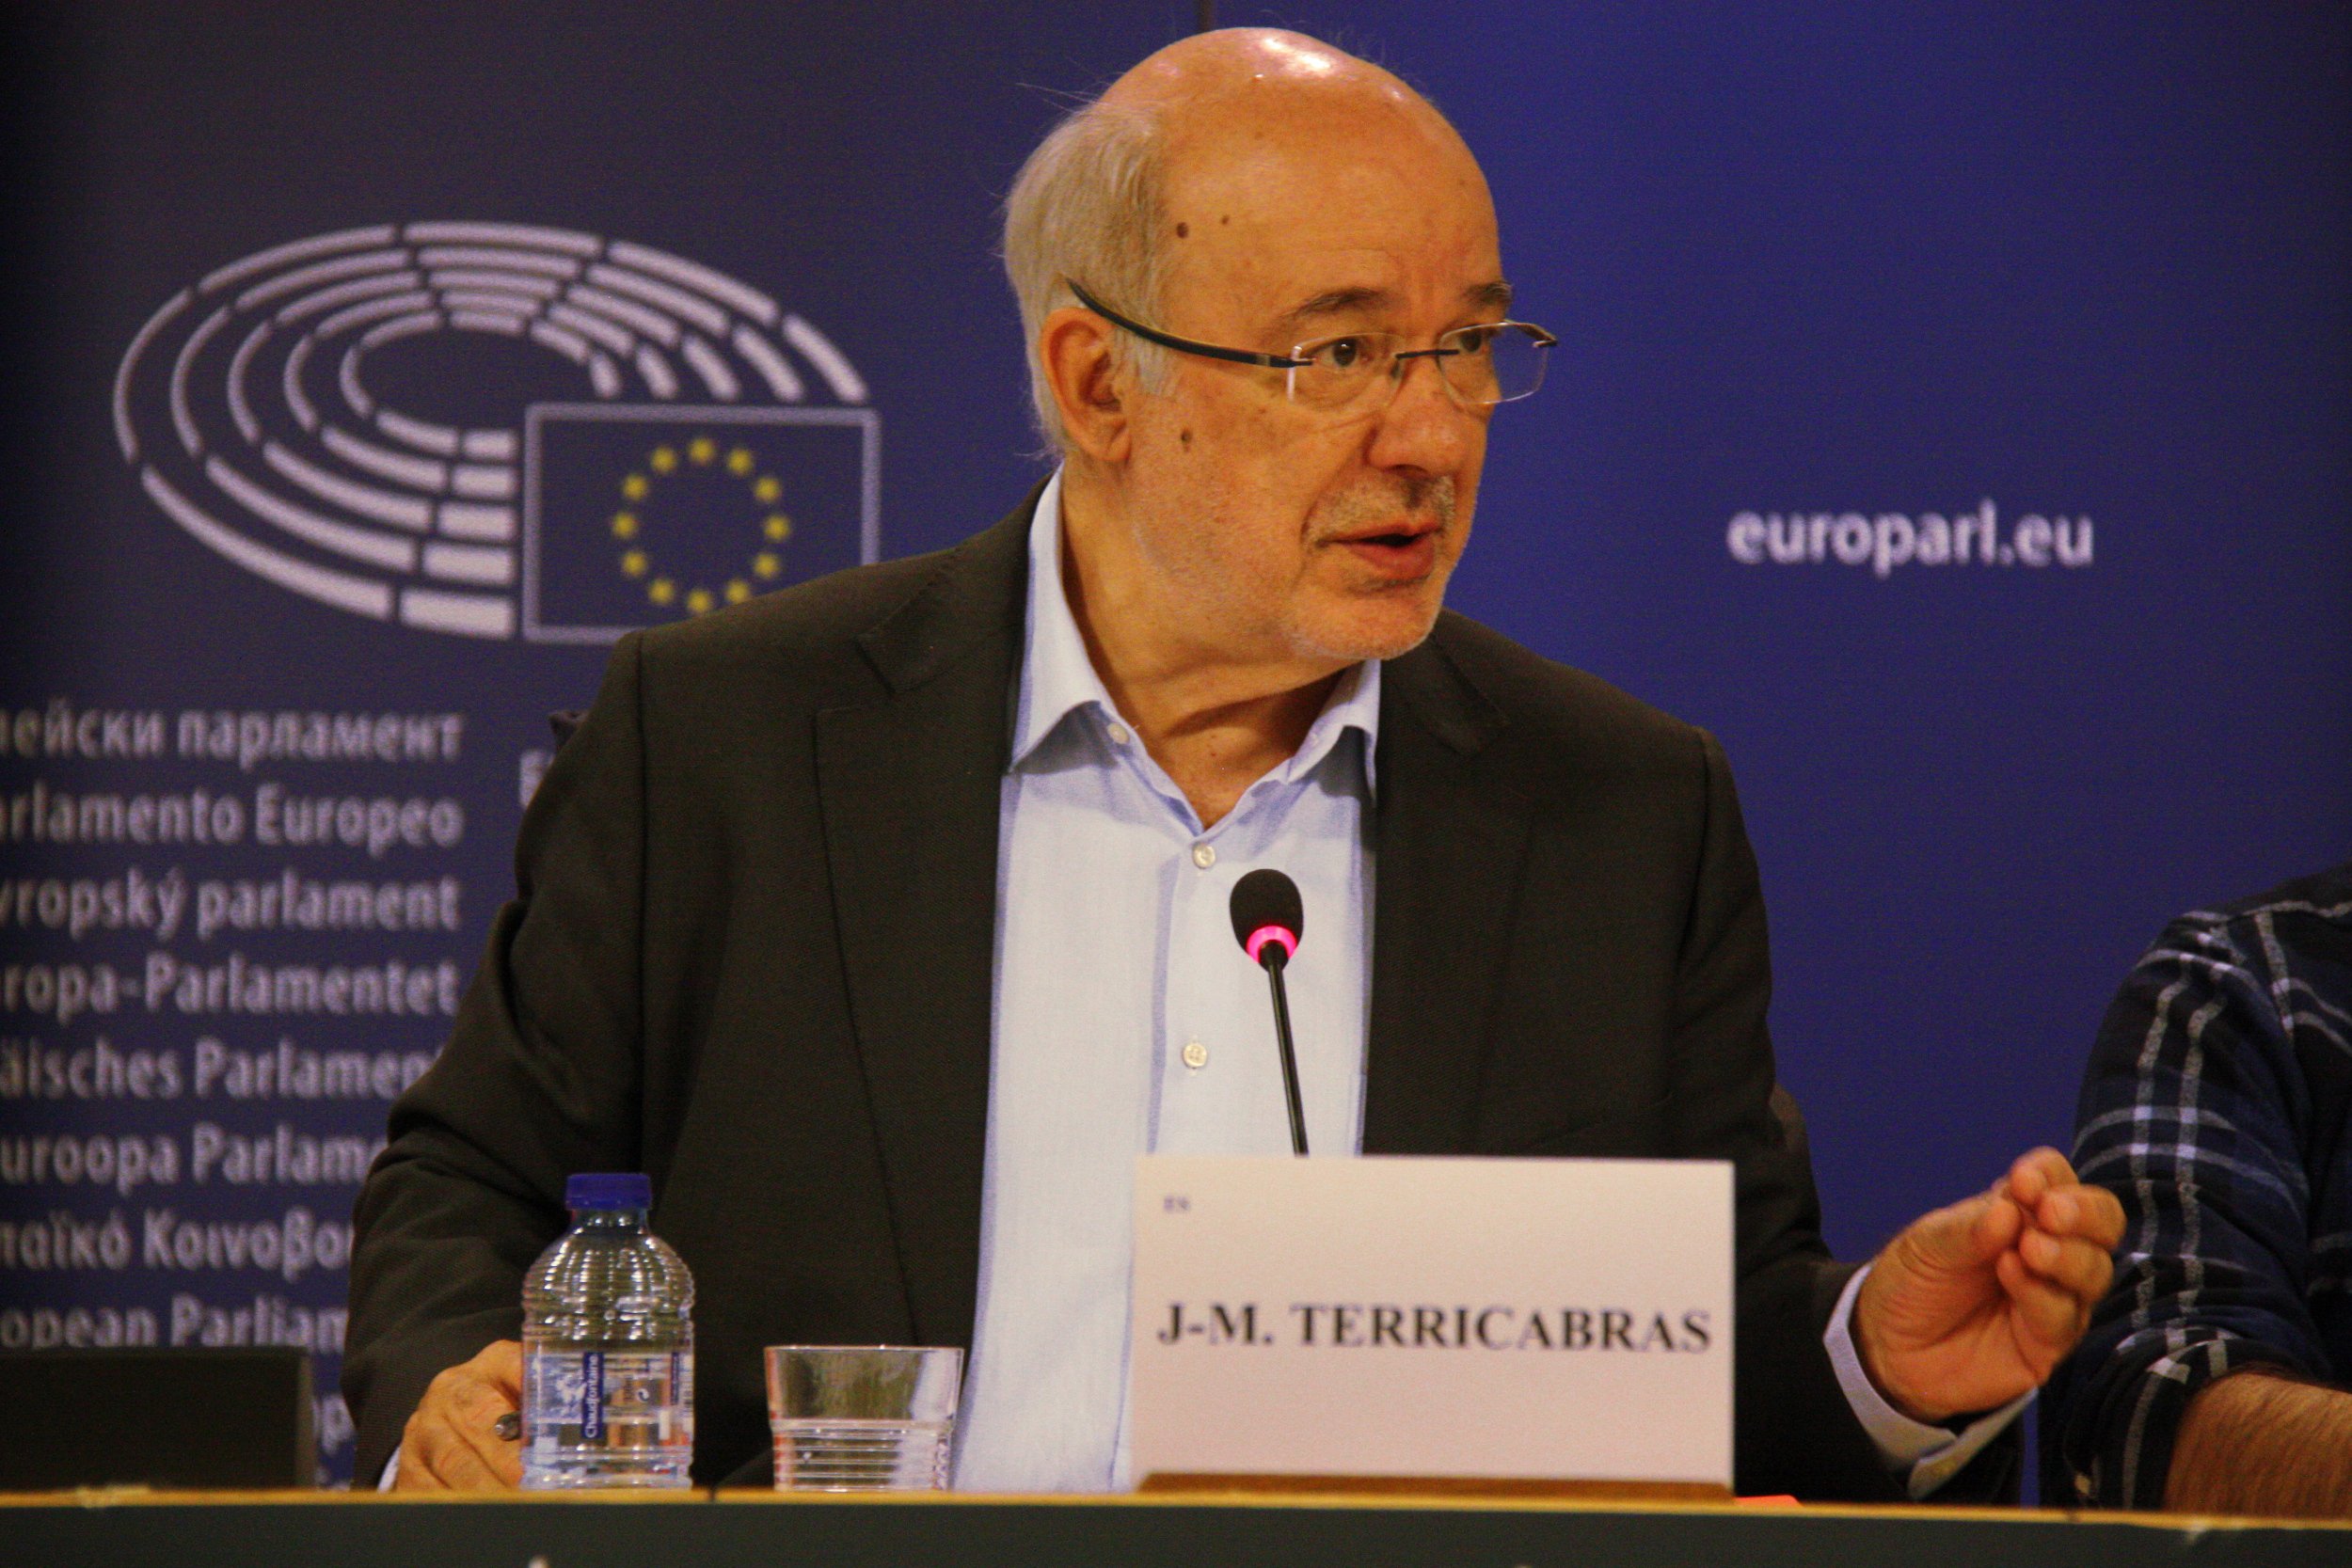 Terricabras reclama a Juncker "mediación" por la independencia